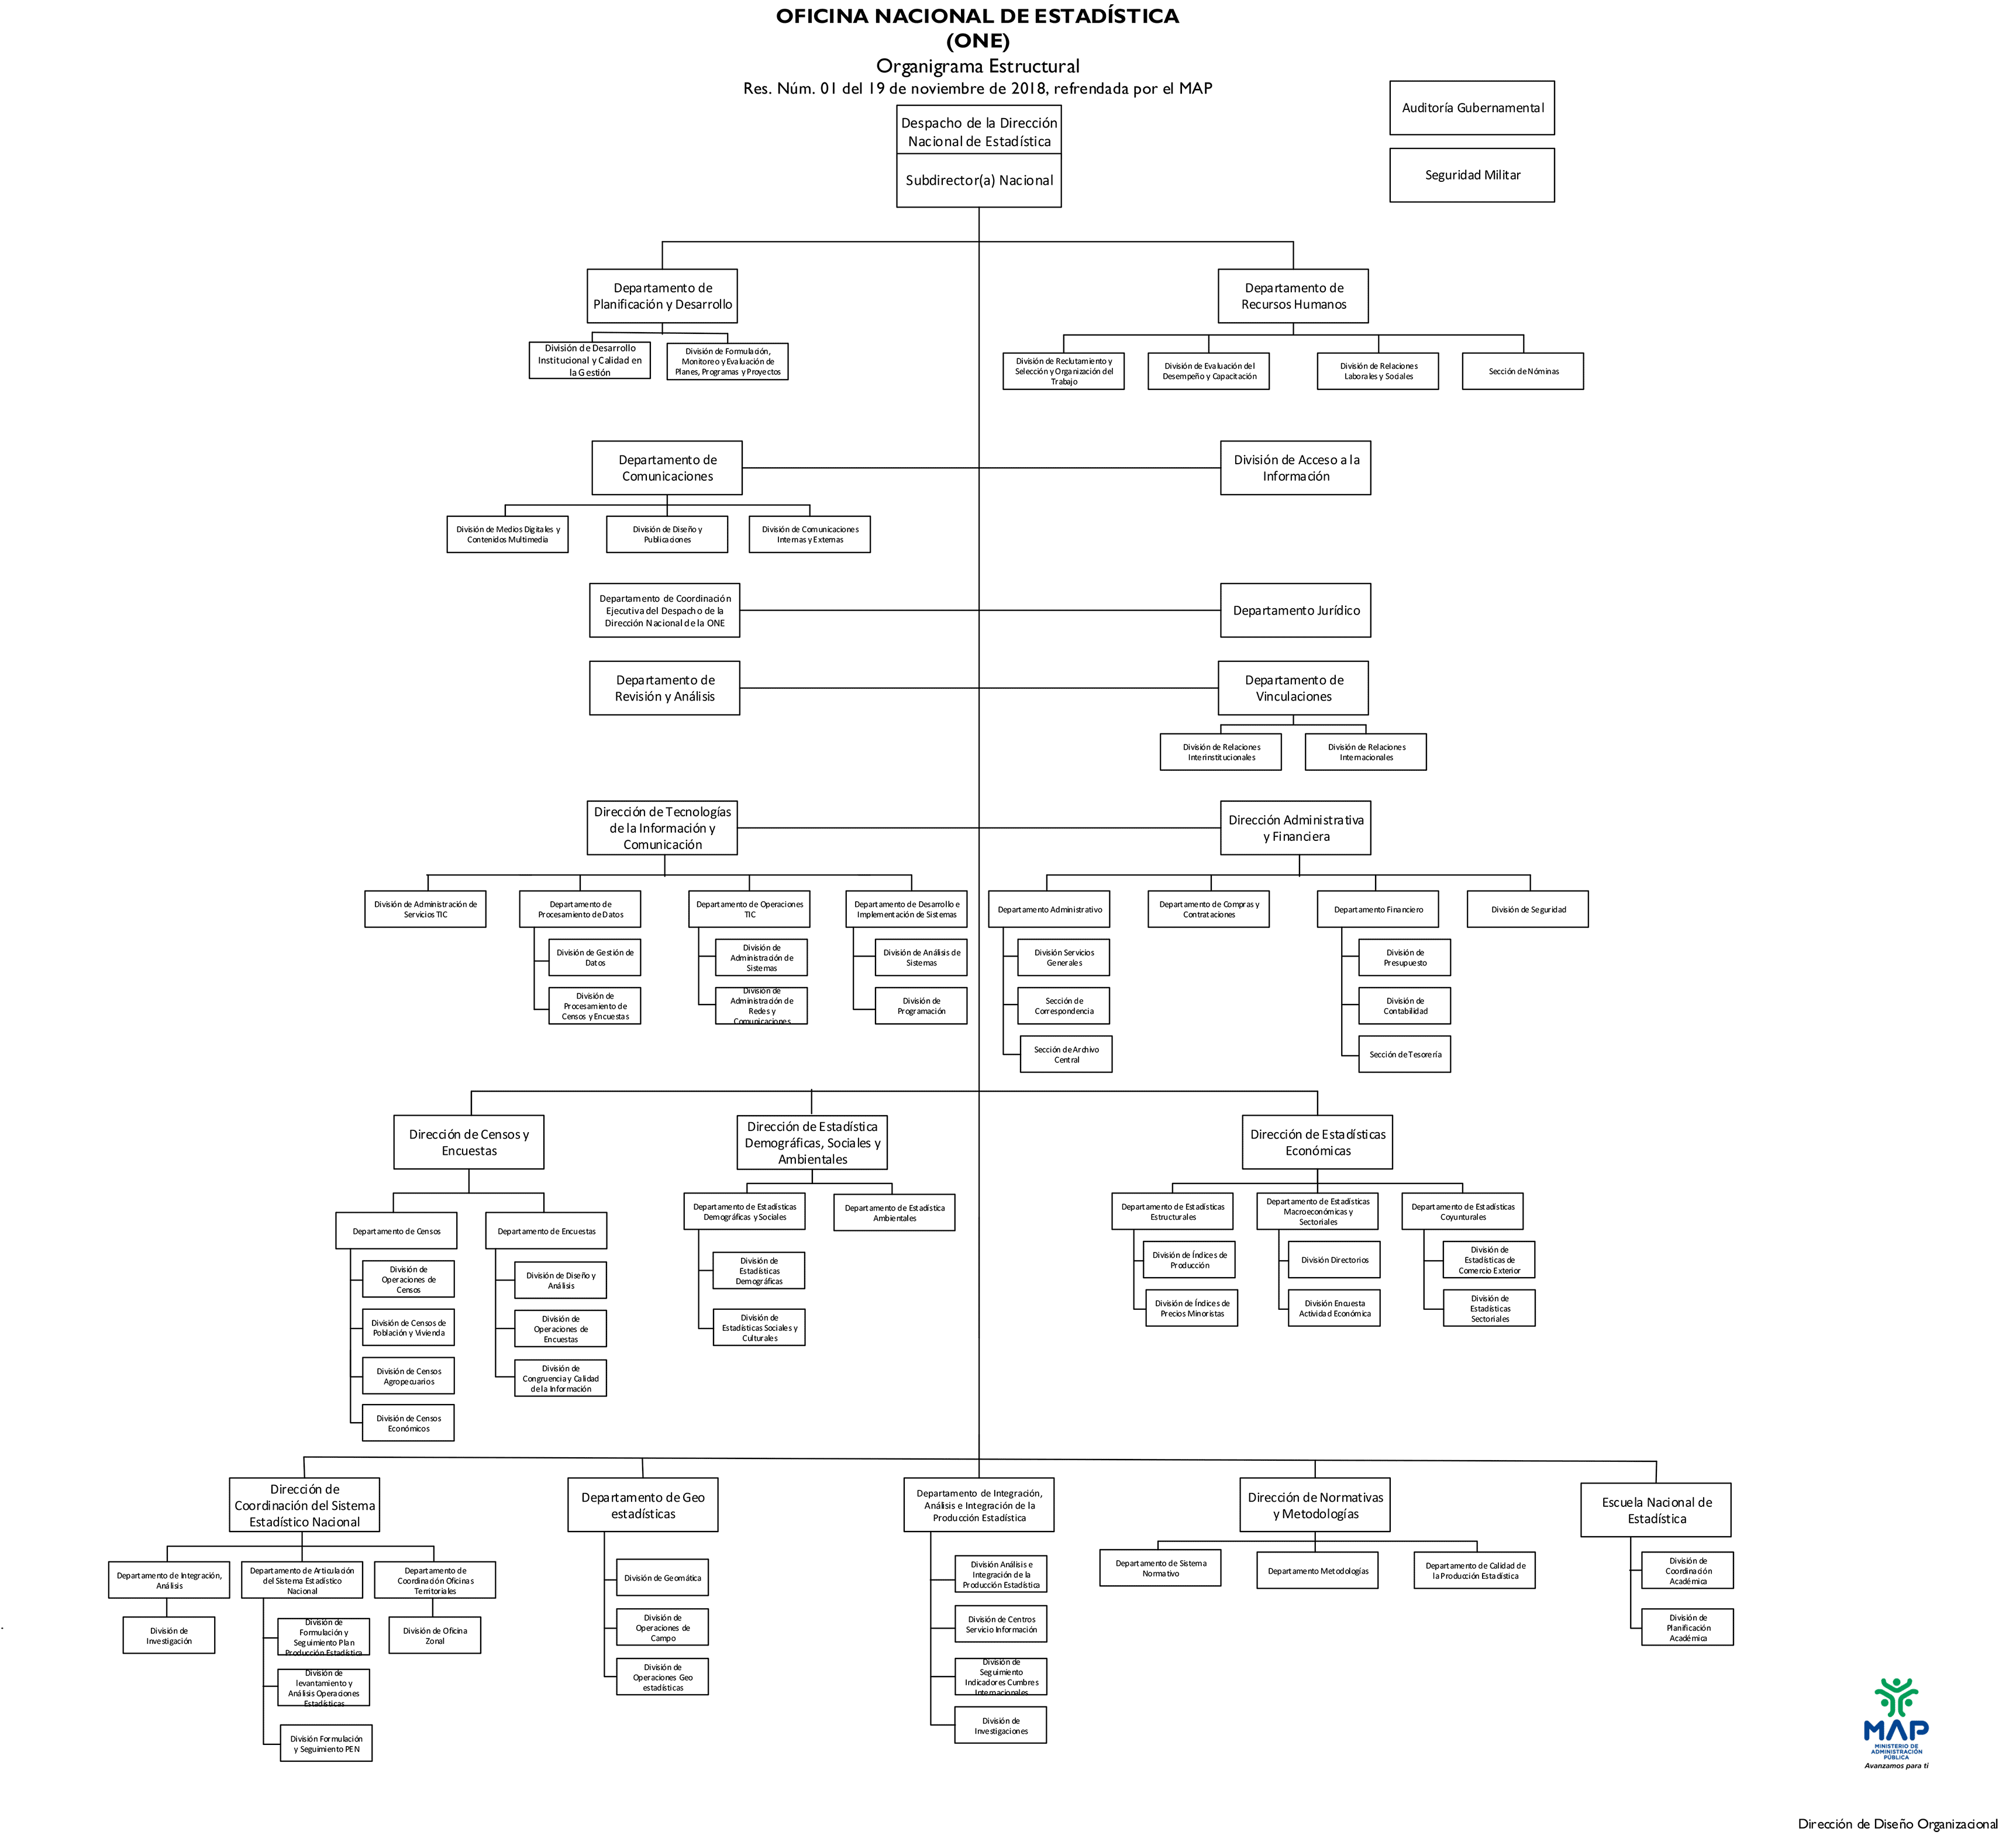 Estructura orgánica de la institución, refrendada por el Ministerio de Administración Pública (MAP) en Res. Núm. 01 del 19 de noviembre de 2018